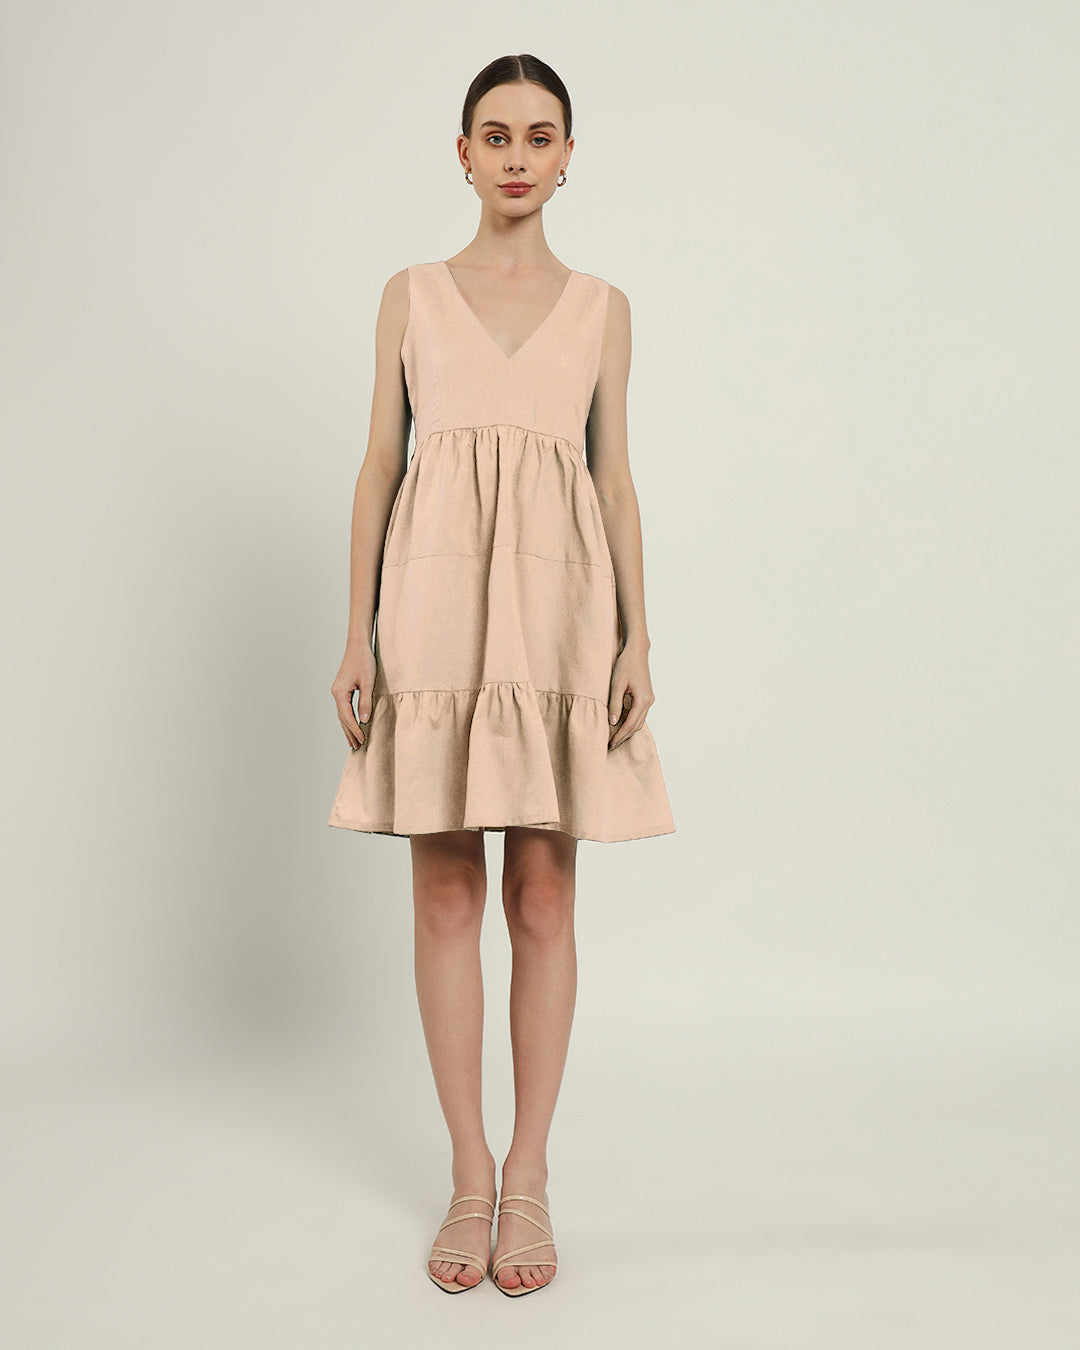 The Minsk Daisy Bisque Linen Dress